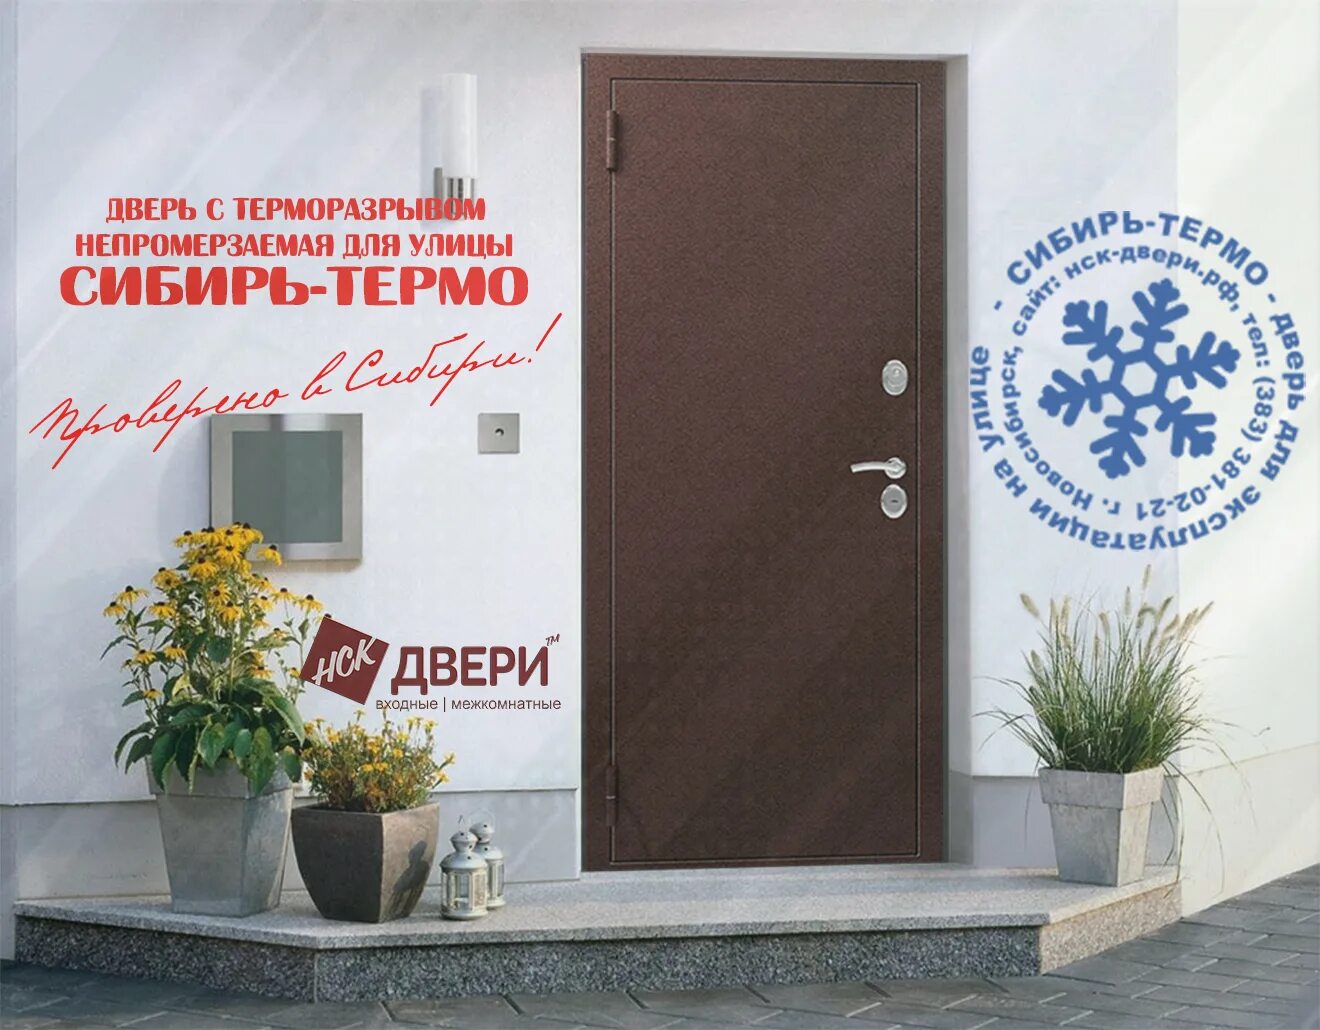 Ремонт дверей в новосибирске. Дверь Сибирь термо. Двери с терморазрывом реклама. Входная дверь термо. Реклама входных дверей.